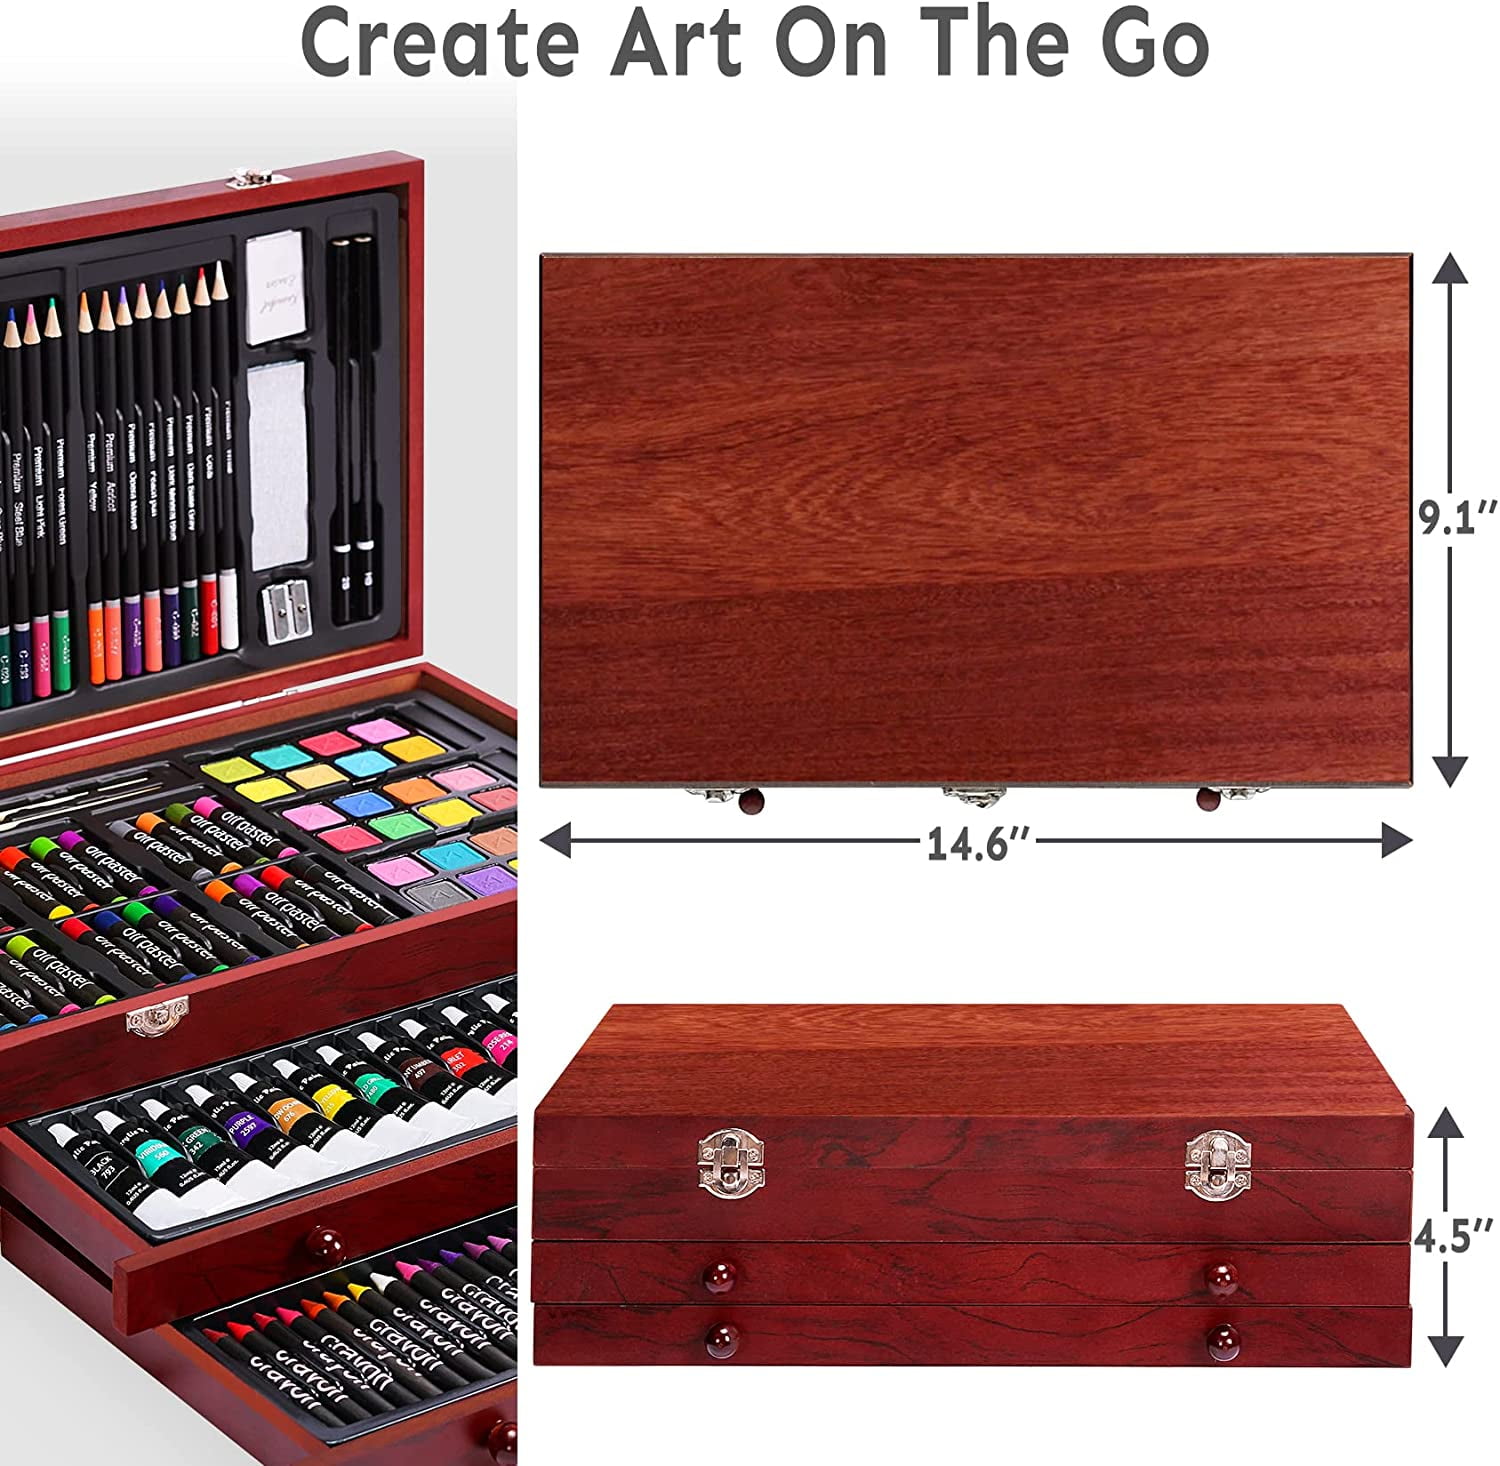 GetUSCart- Sketching Drawing Art Set,58pcs Professional Wooden